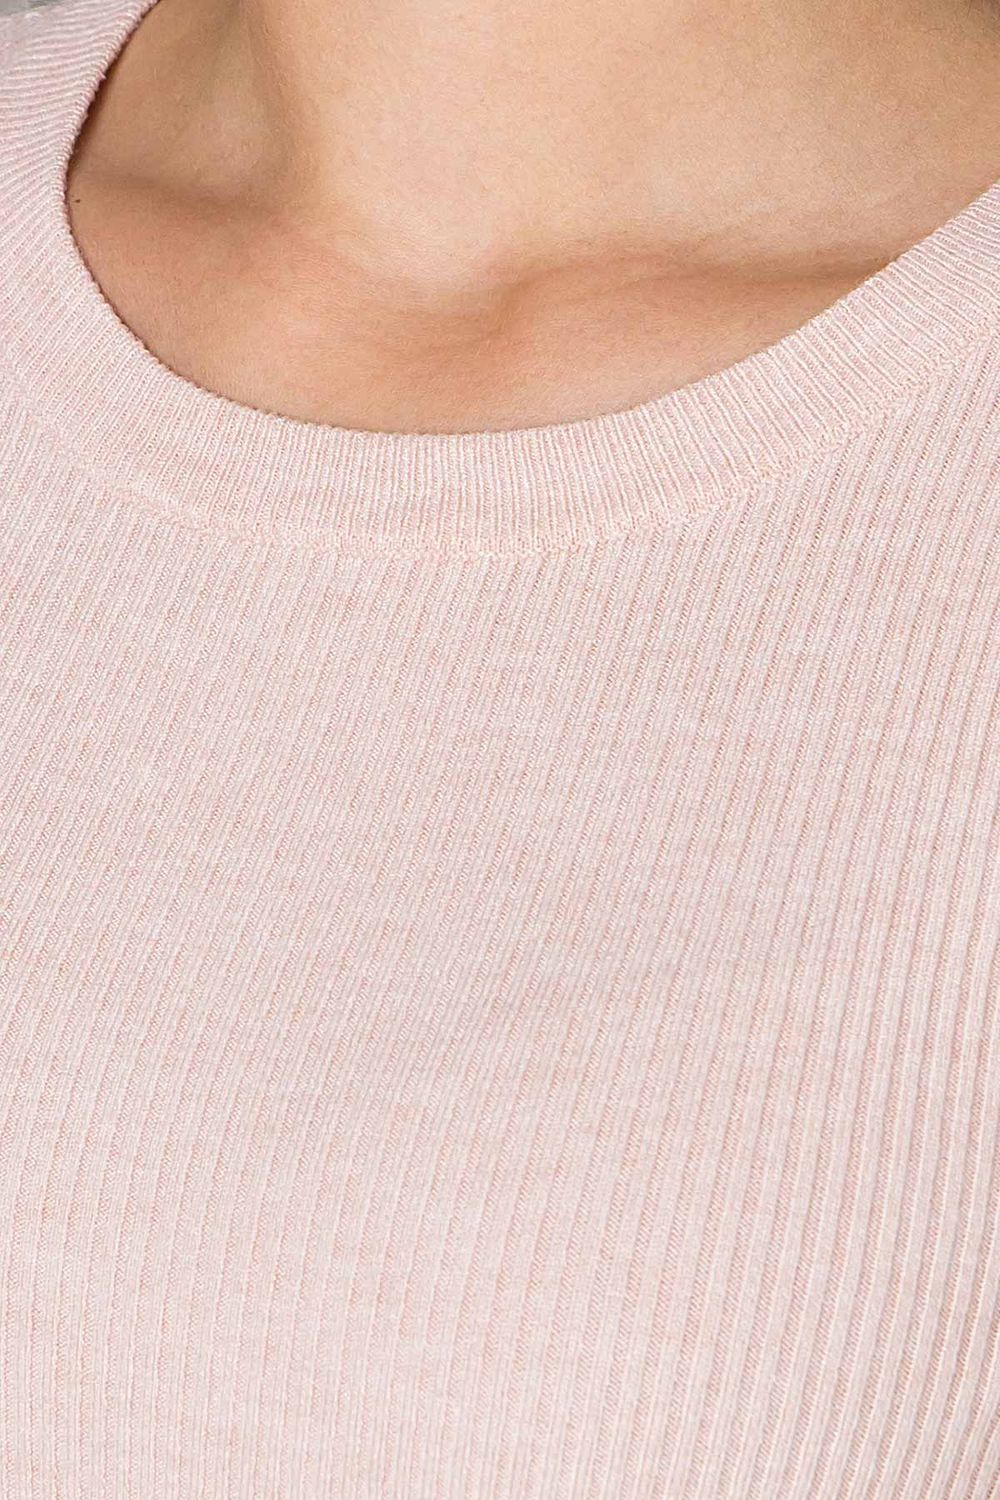 Женская базовая кофточка джемпер персикового цвета - фото